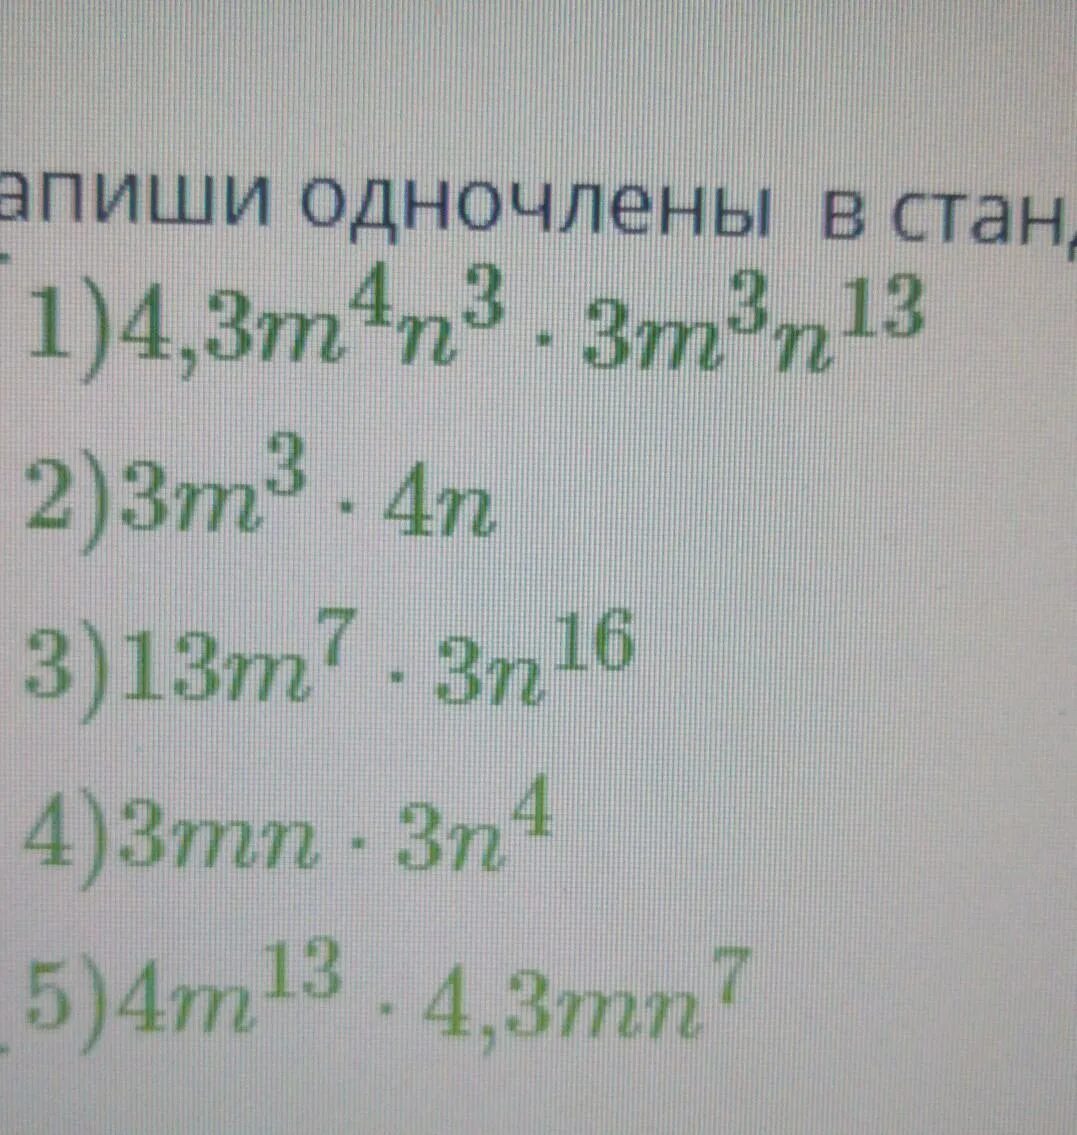 9 n 5 mn. Одинаковая буквенная часть у одночленов. Одночлены имеющие одинаковую буквенную часть.